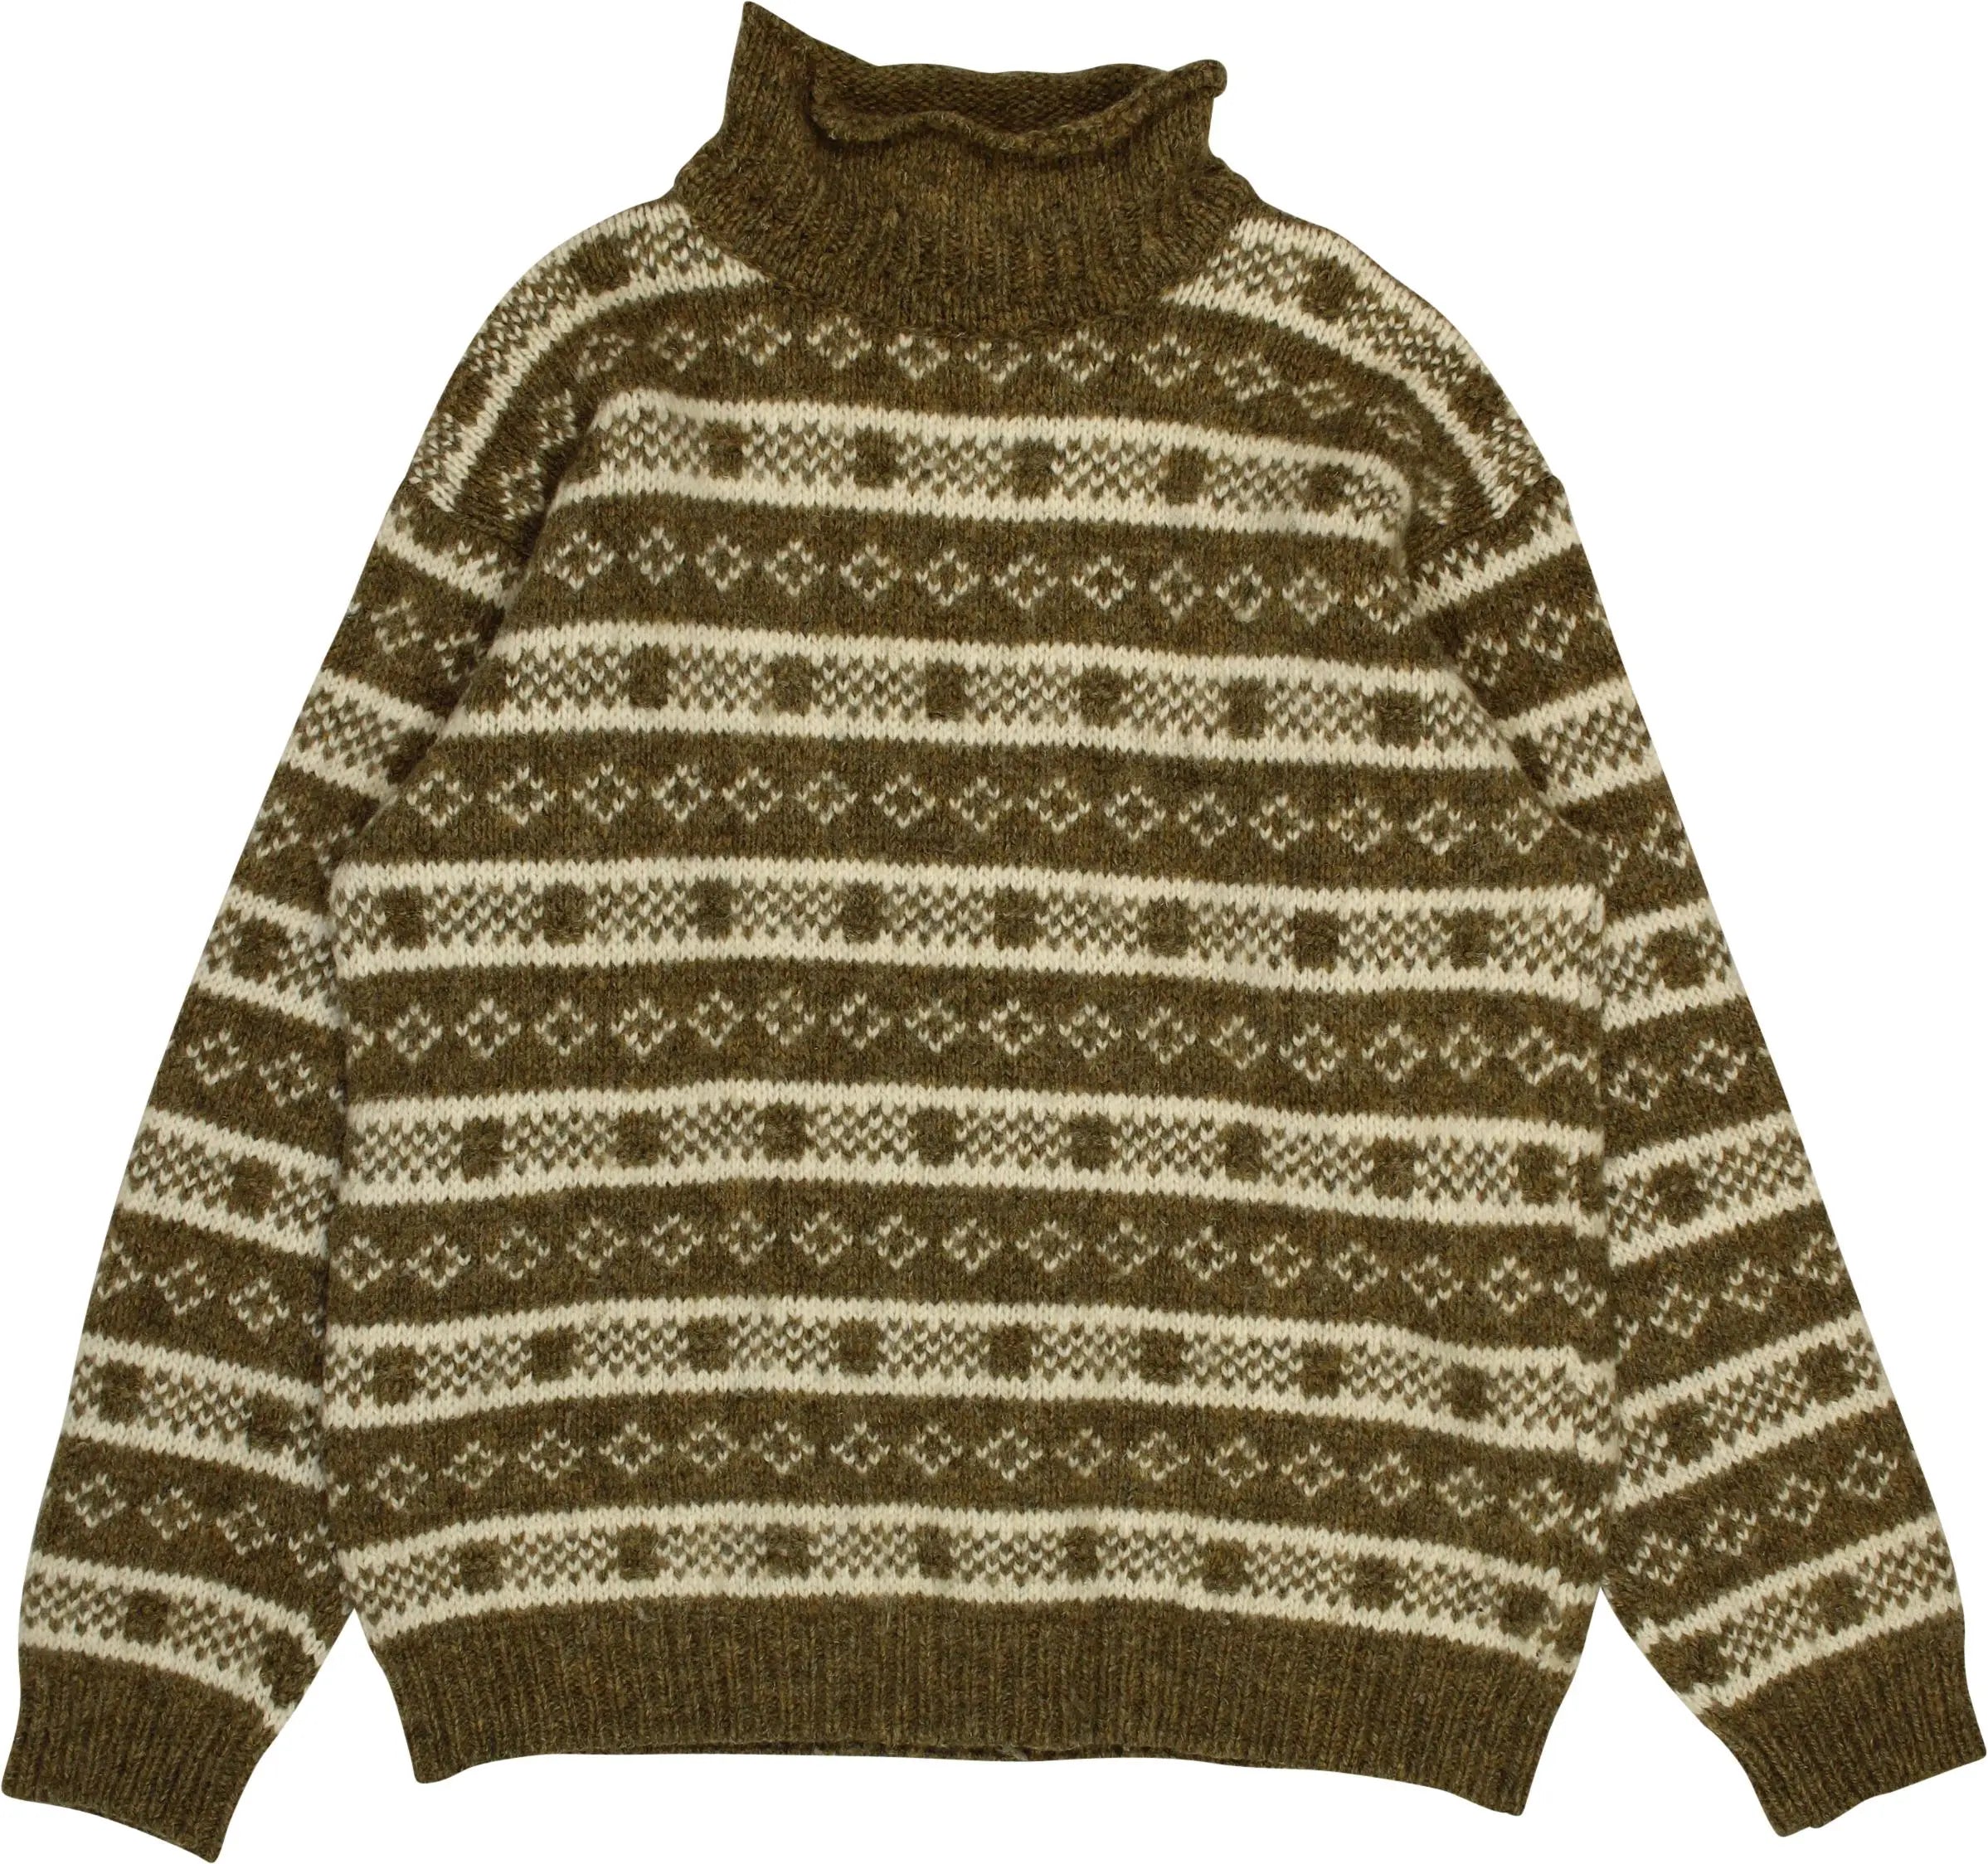 Devold - Wool Turtleneck Jumper- ThriftTale.com - Vintage and second handclothing